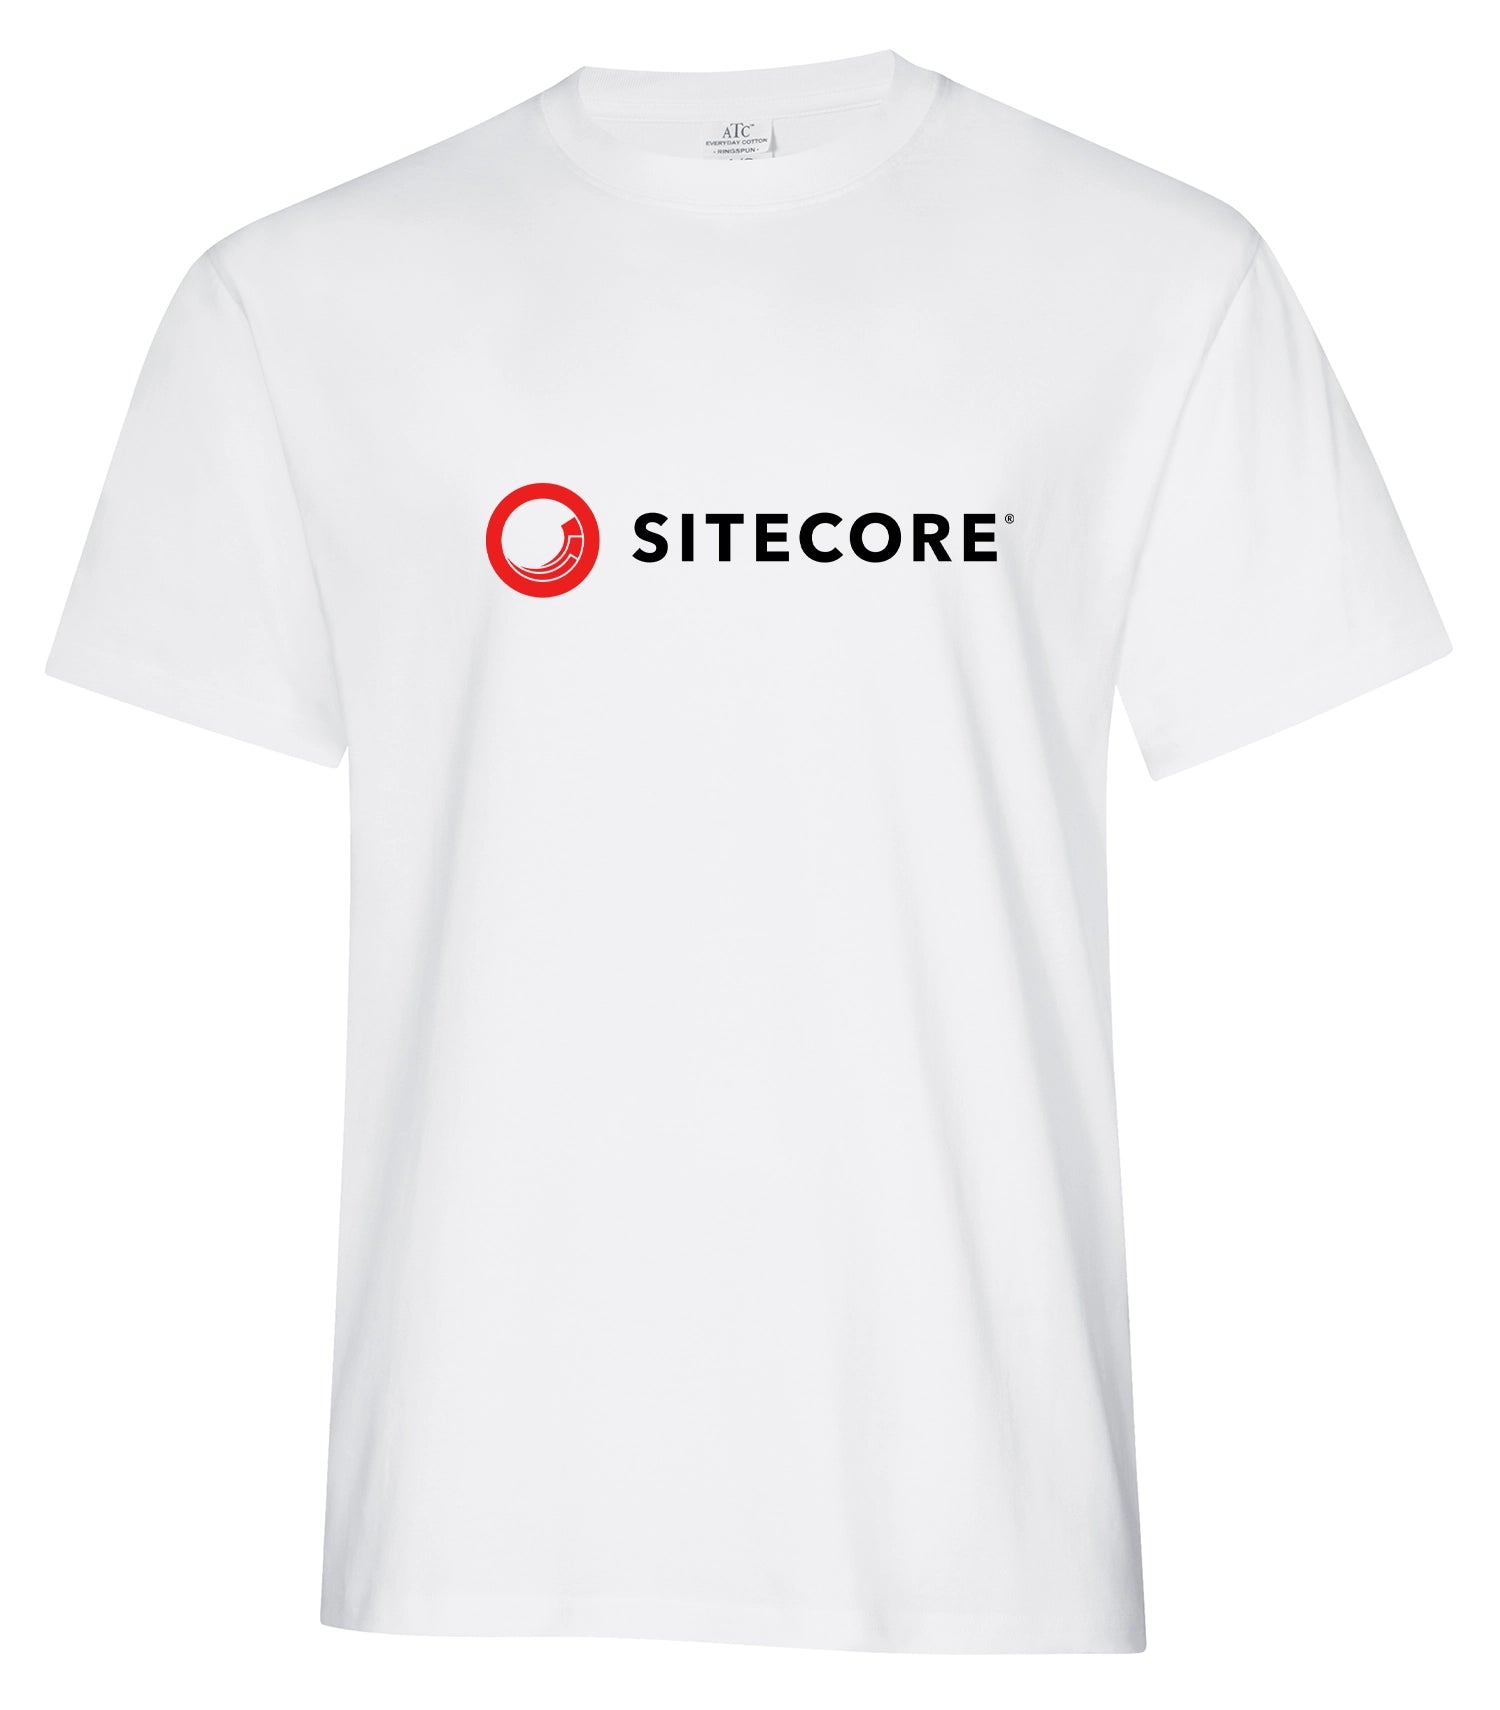 SCR - T-shirt en coton filé à anneaux ATC Everyday